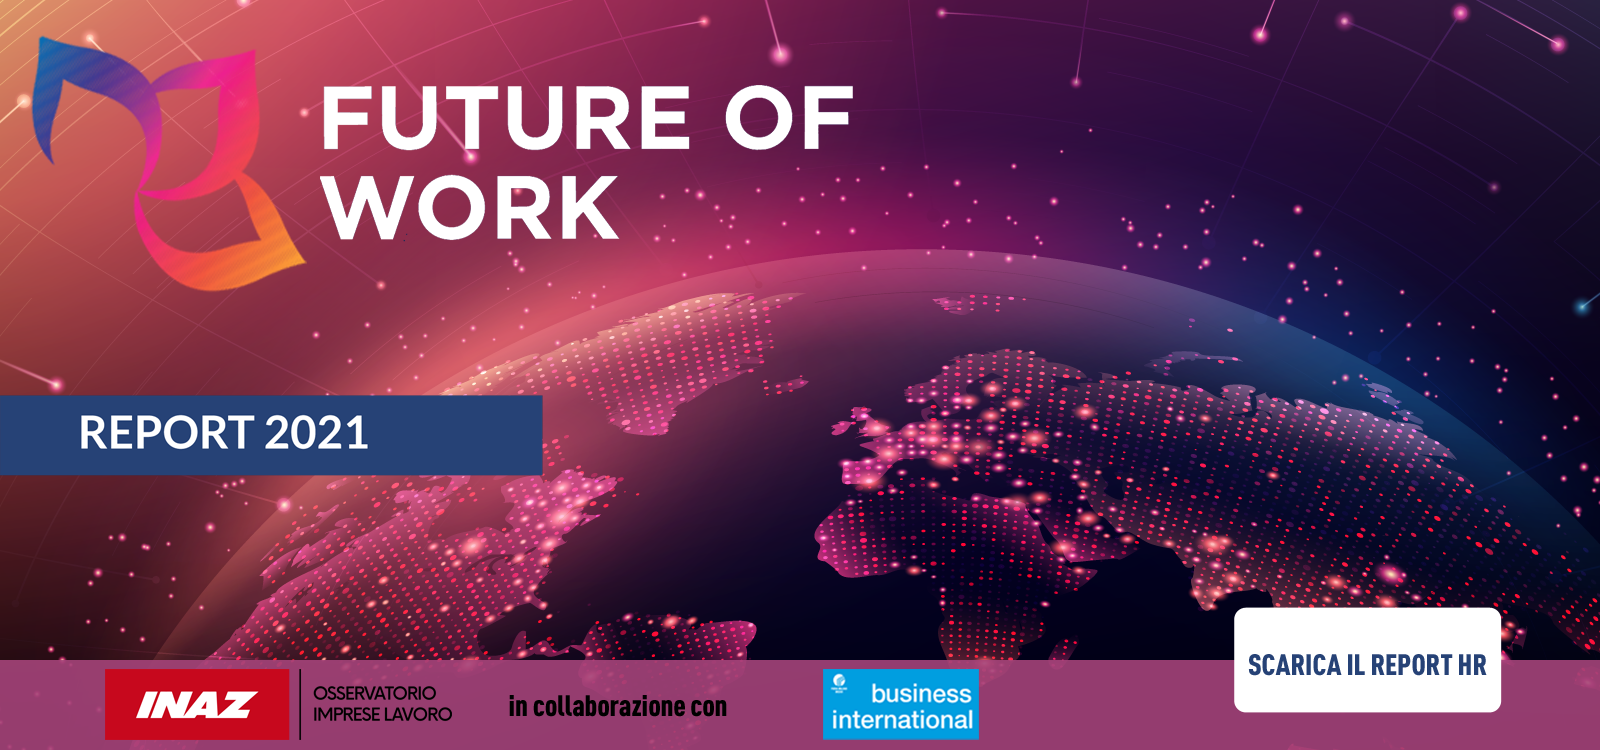 Scarica il report FUTURE OF WORK 2021, la survey realizzata da Business International in collaborazione con Osservatorio Imprese Lavoro Inaz